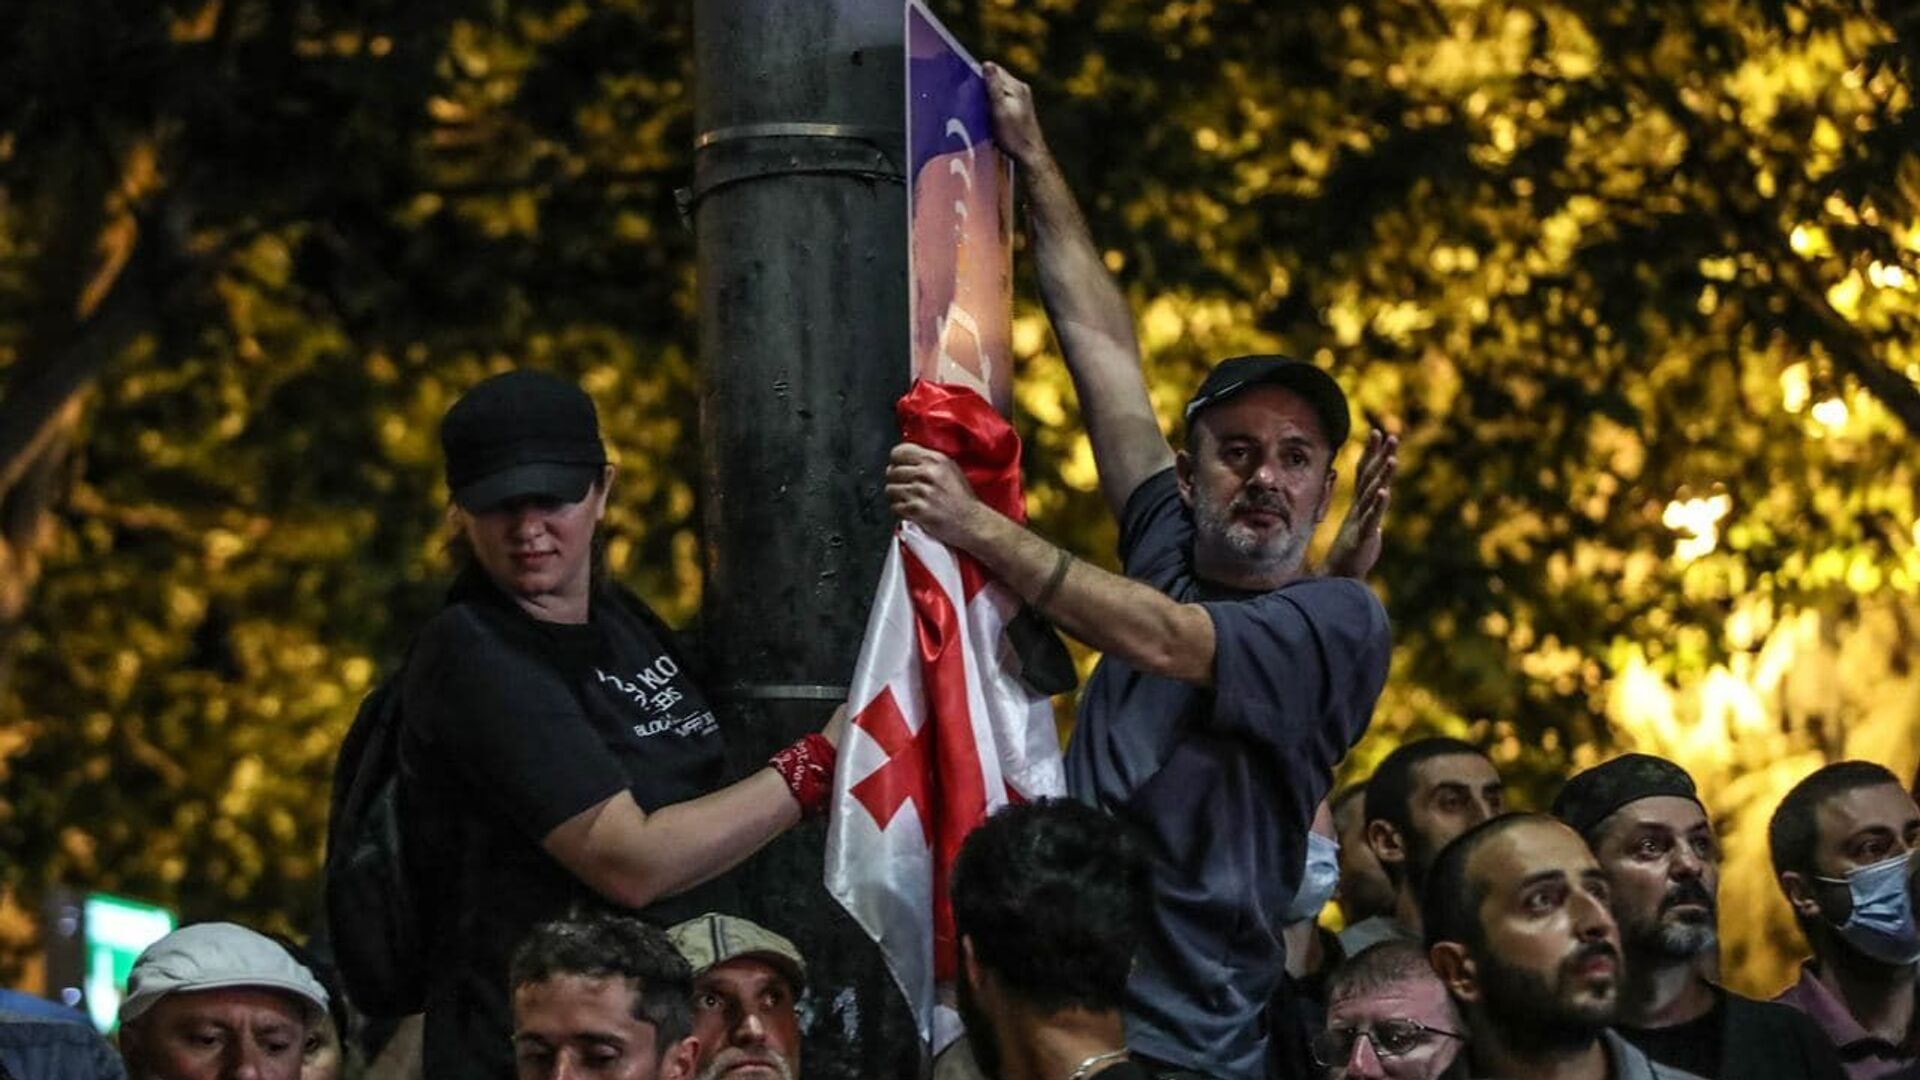 Противостояние у парламента Грузии 6 июля 2021 года. Традиционалисты держат грузинский флаг в руках - Sputnik Грузия, 1920, 07.07.2021